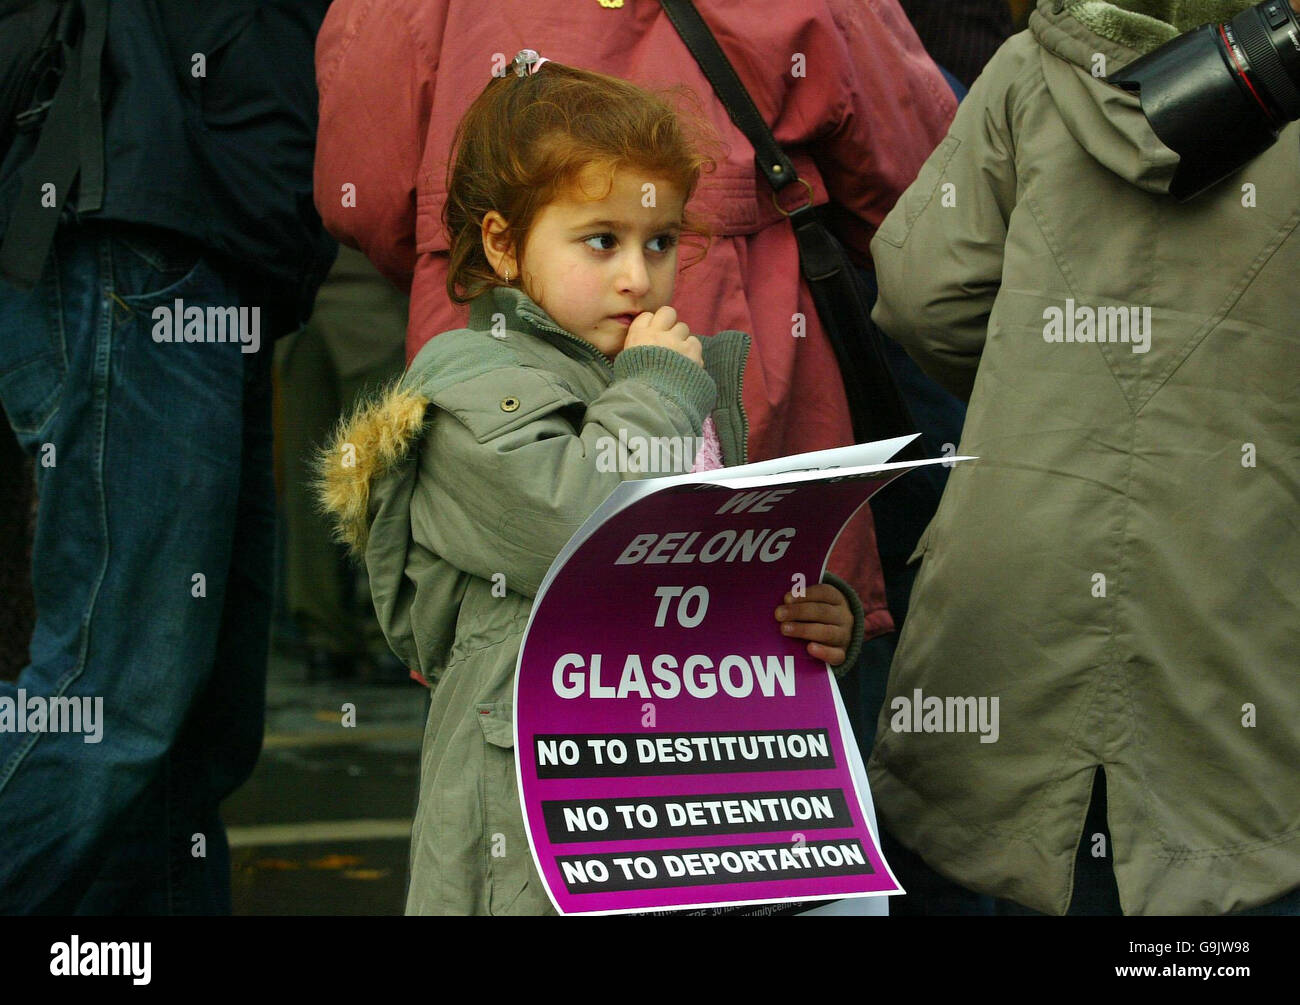 Gulben Salban, âgé de 4 ans, de Glasgow, se joint aux réfugiés turcs rassemblés pour protester contre les perquisitions, la détention et la déportation devant le Parlement écossais d'Édimbourg. Banque D'Images